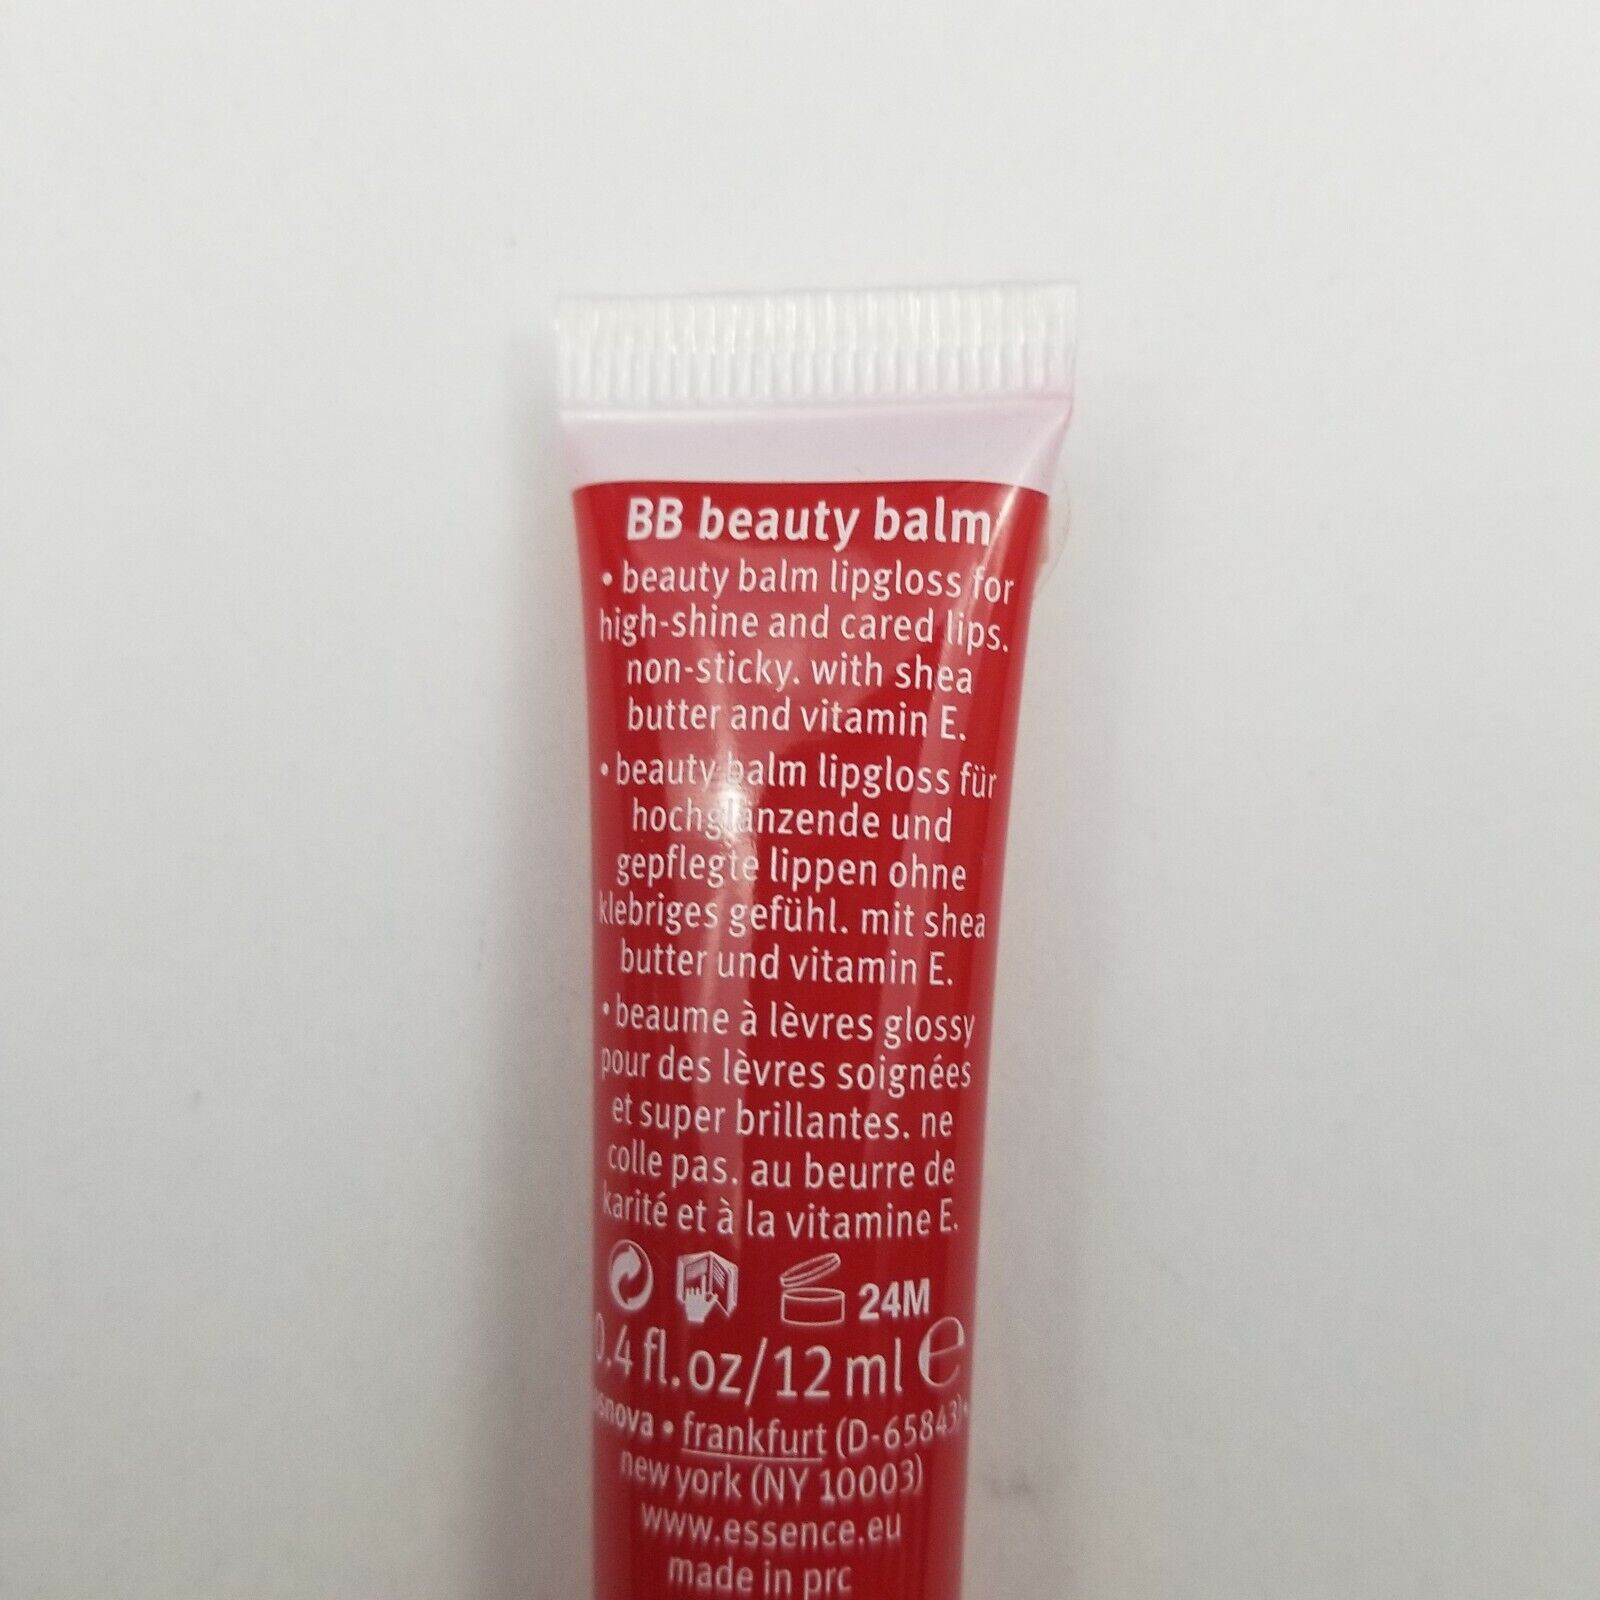 3X Essence BB Beauty Balm Lip Gloss with Shea Butter 0.4 oz 05 Heartbreaker New essence 05 Heartbreaker - фотография #6